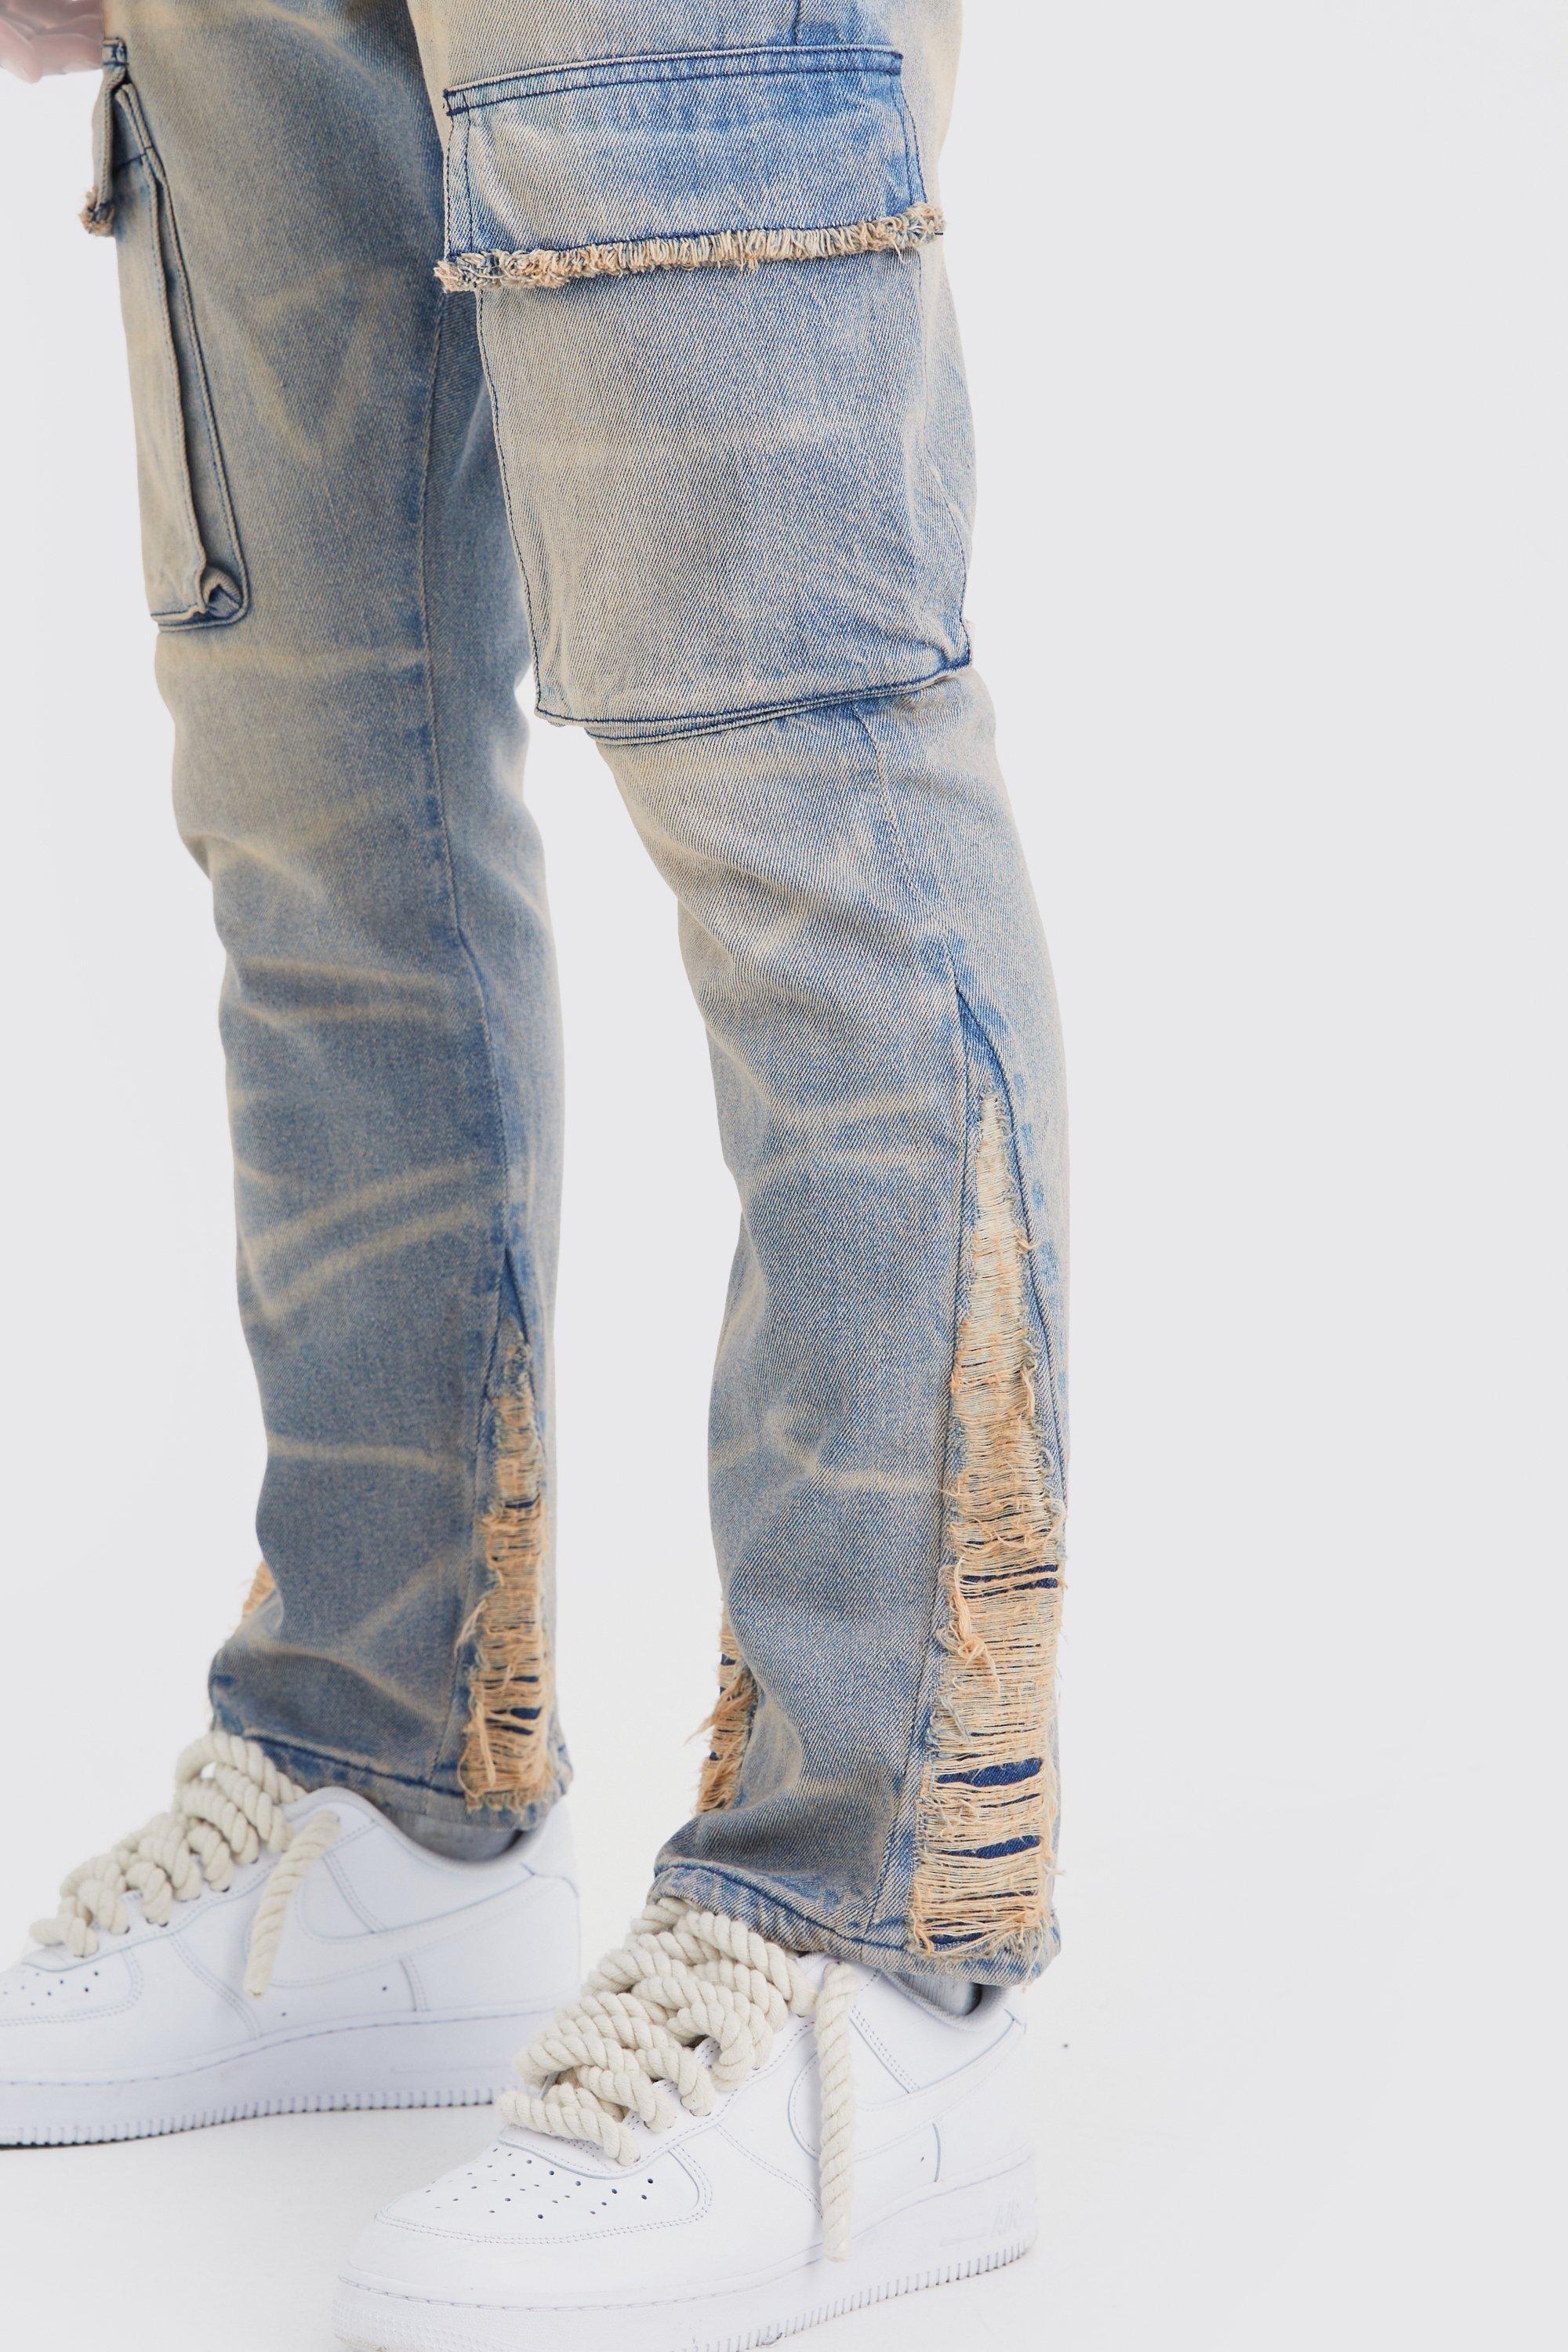 Slim Rigid Flare Cargo Jeans